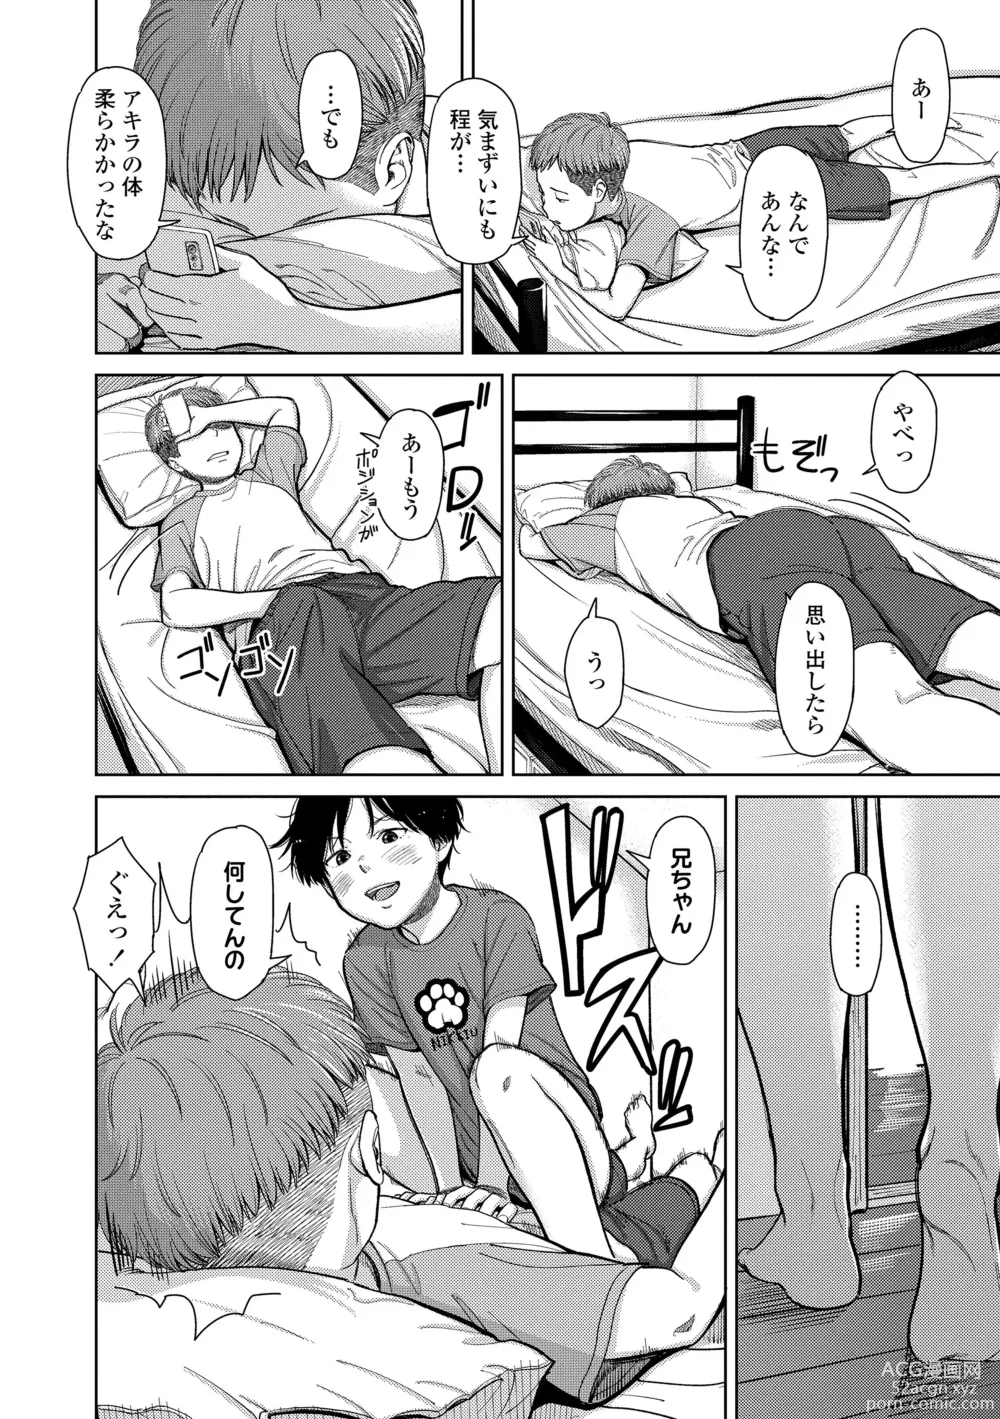 Page 22 of manga Over Kill